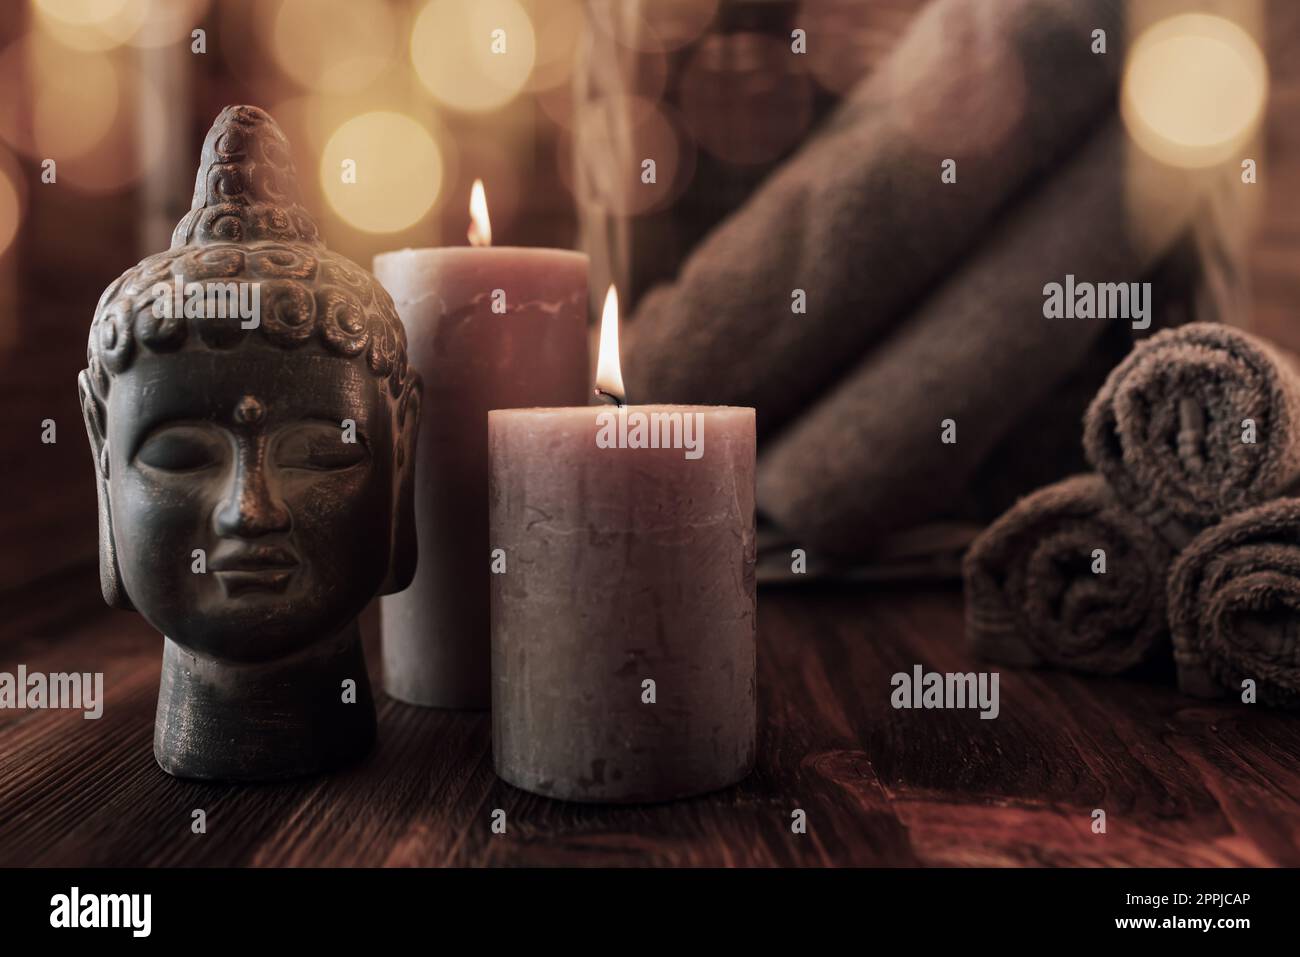 Bienestar y meditación en armonía Foto de stock